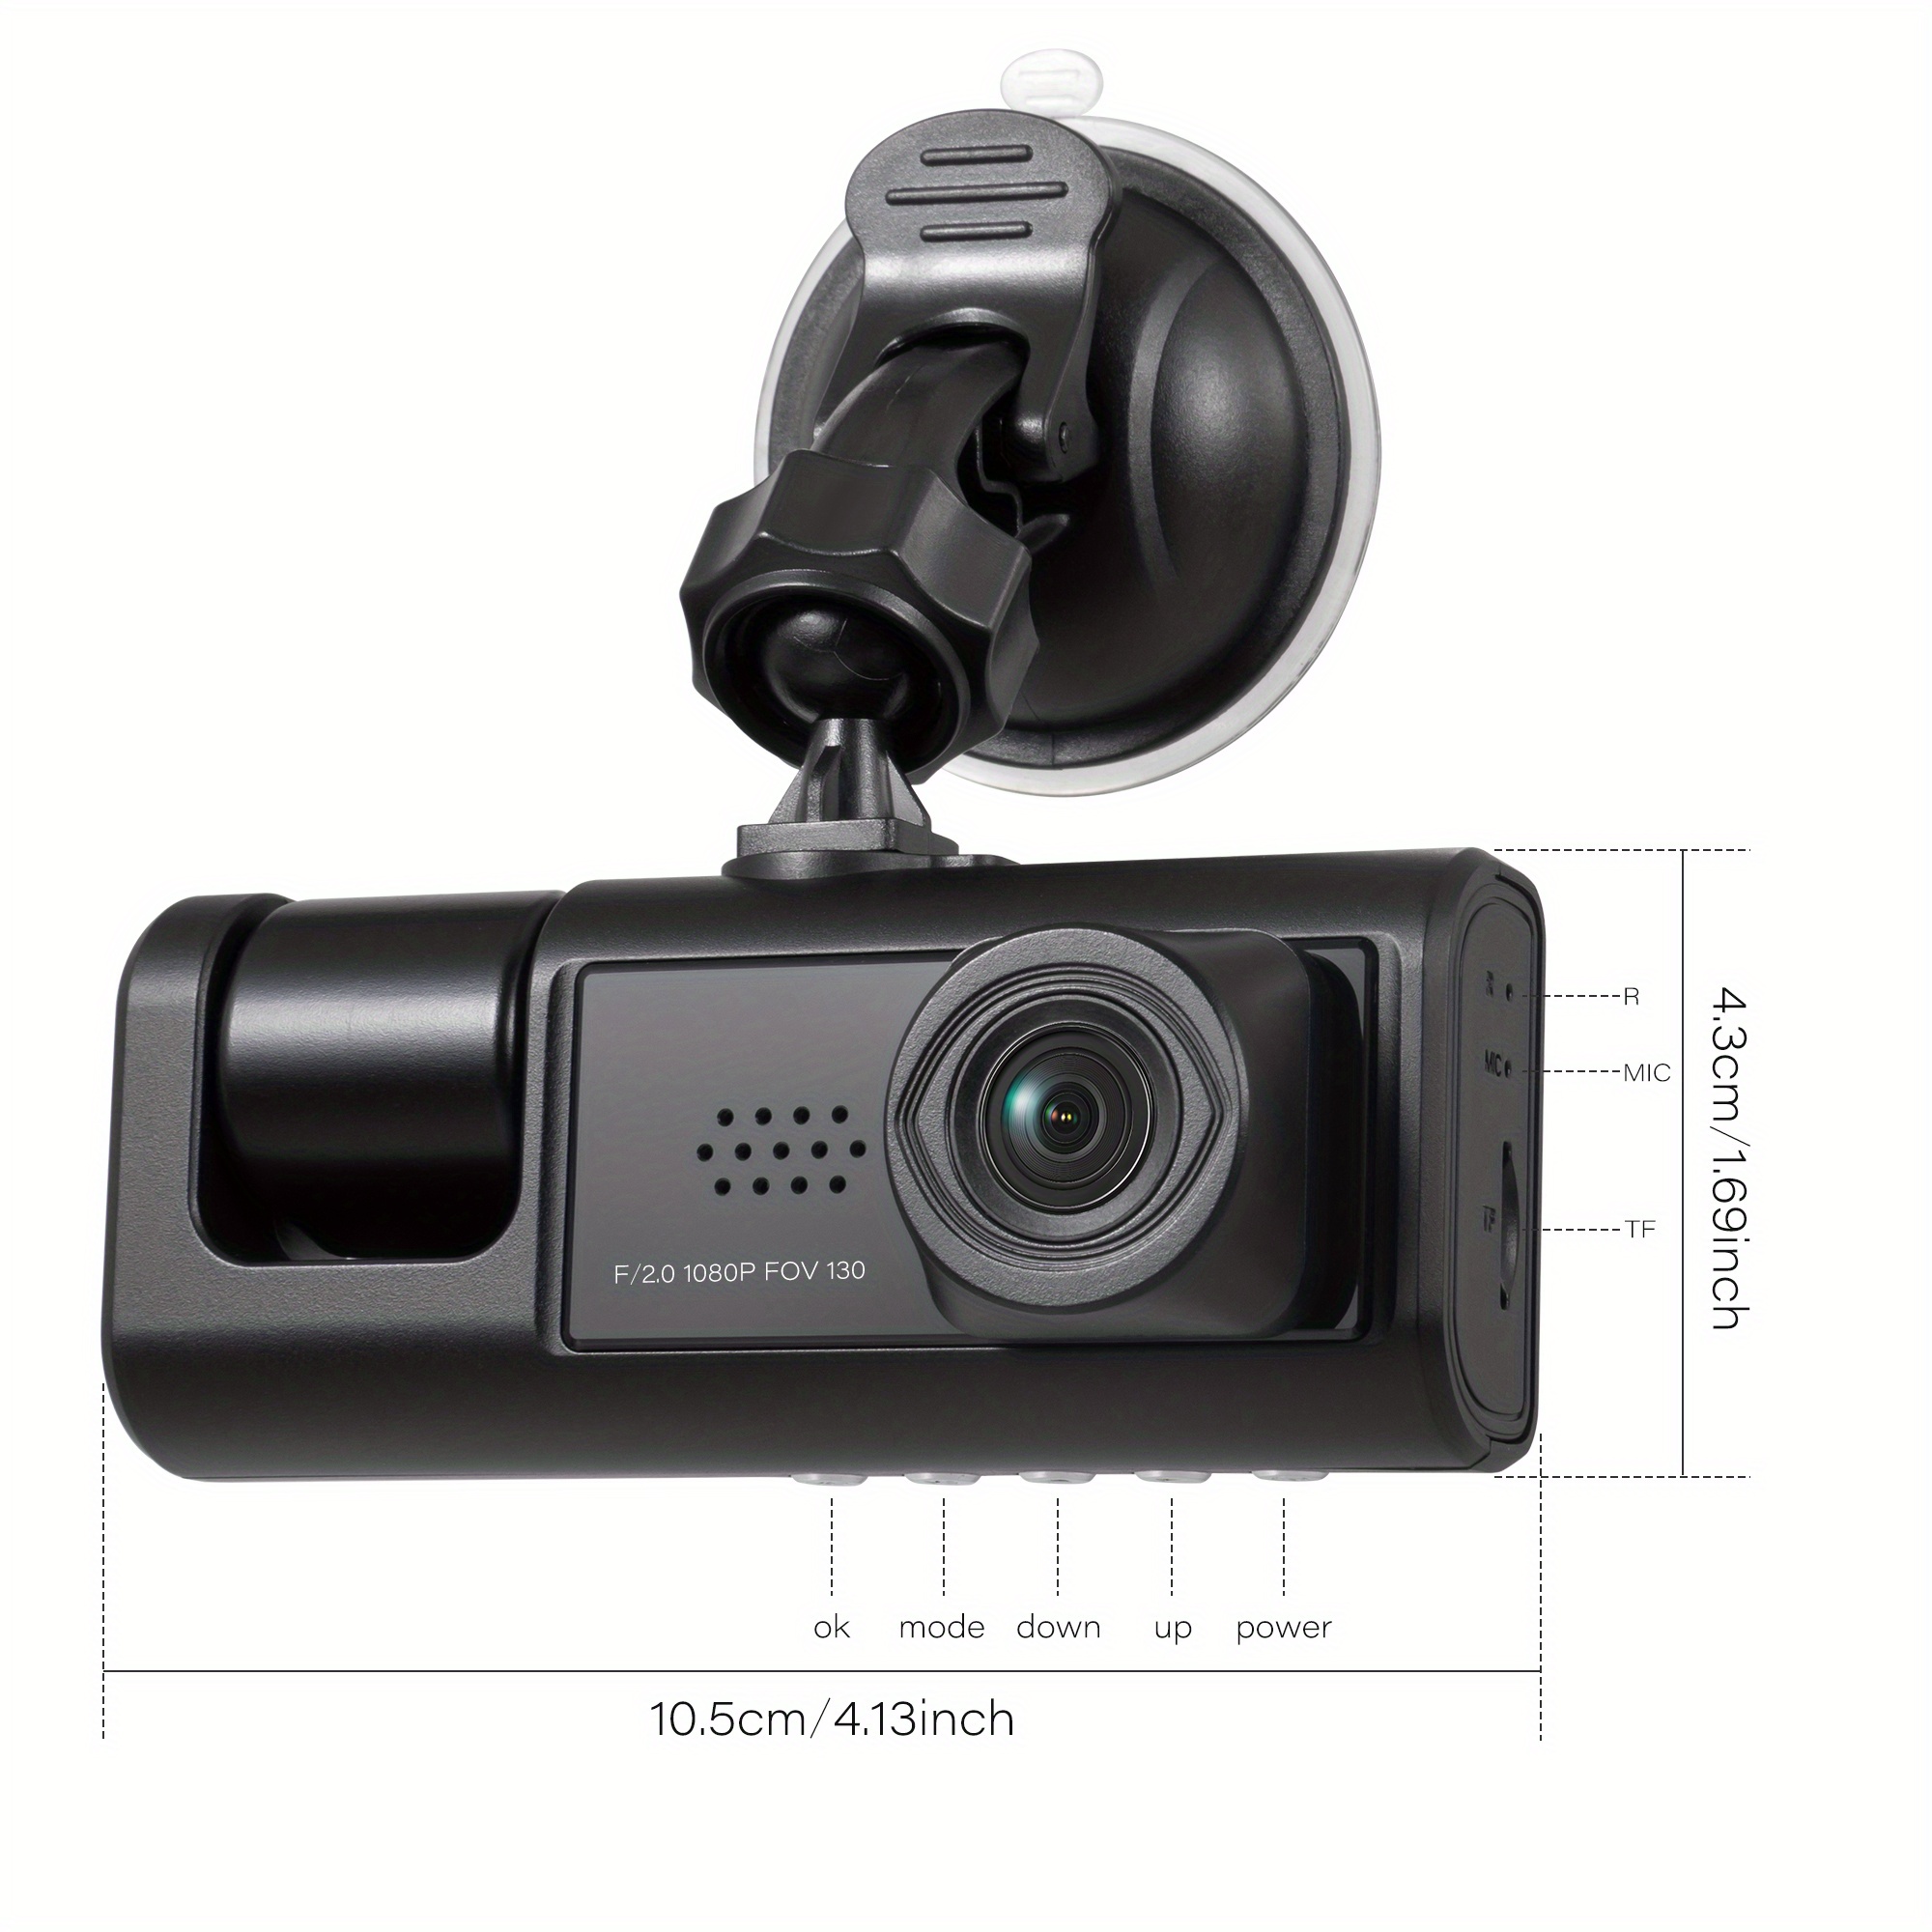 Comprar Icreative Car DVR 3 cámaras Full HD 1080P cámara DVR de doble lente  para coche pantalla IPS de 2,0 pulgadas cámara grabadora trasera delantera